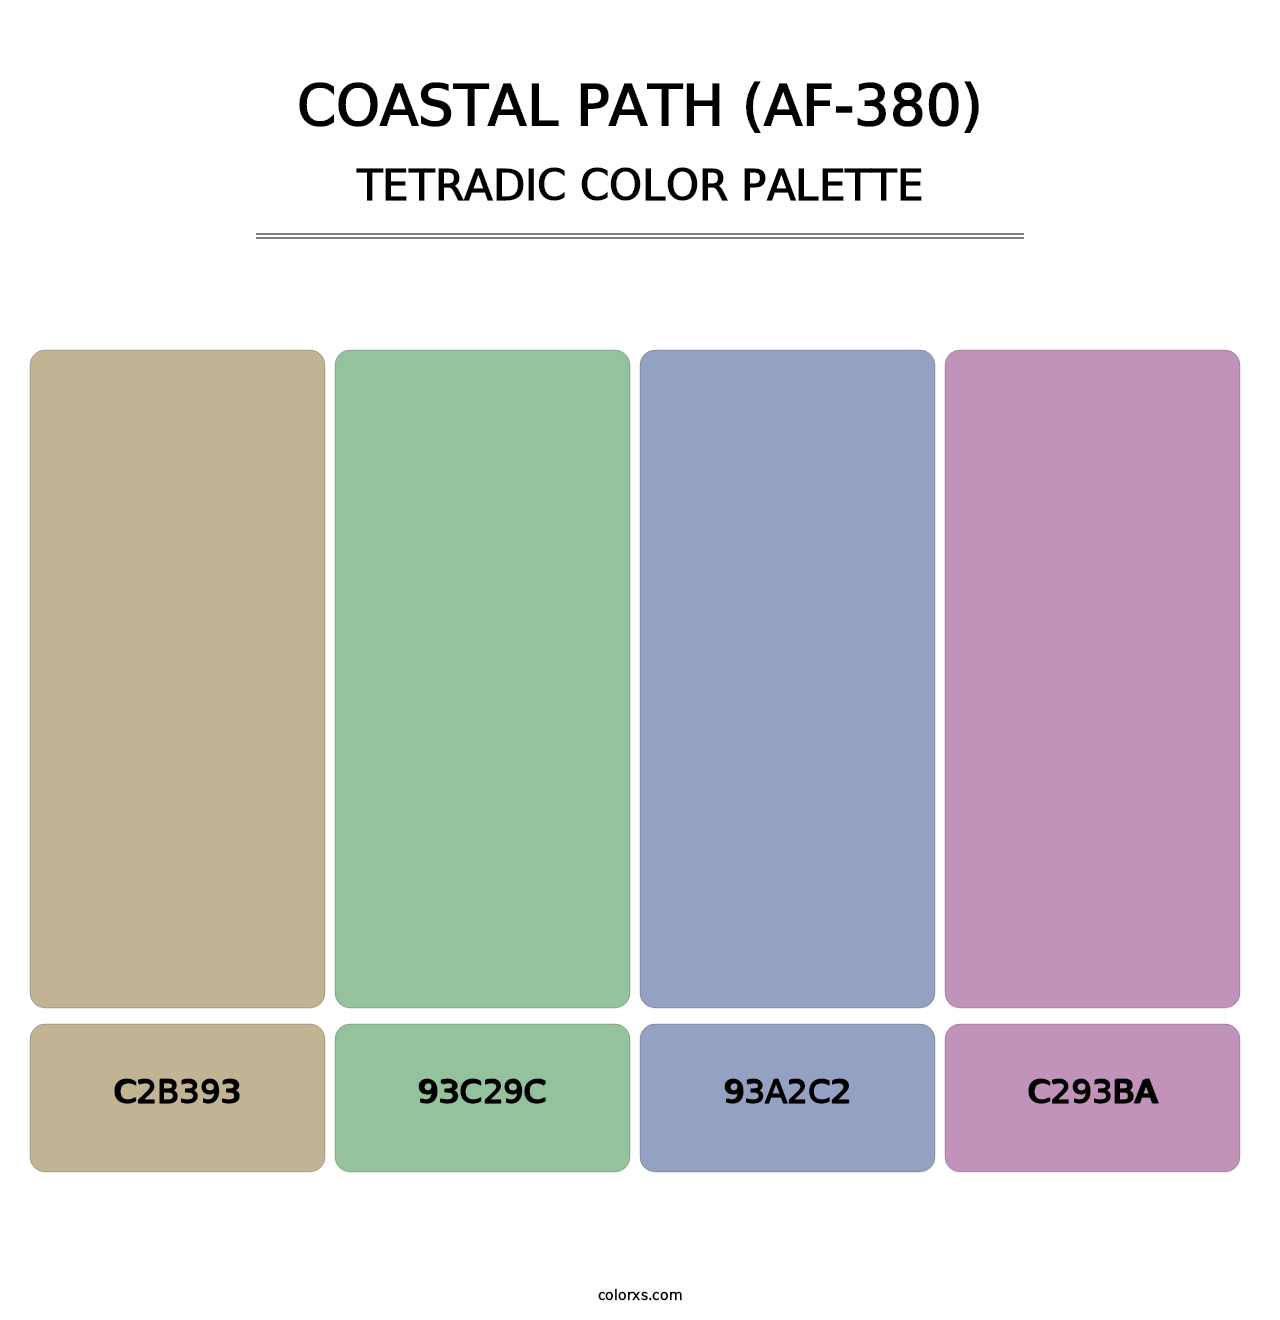 Coastal Path (AF-380) - Tetradic Color Palette